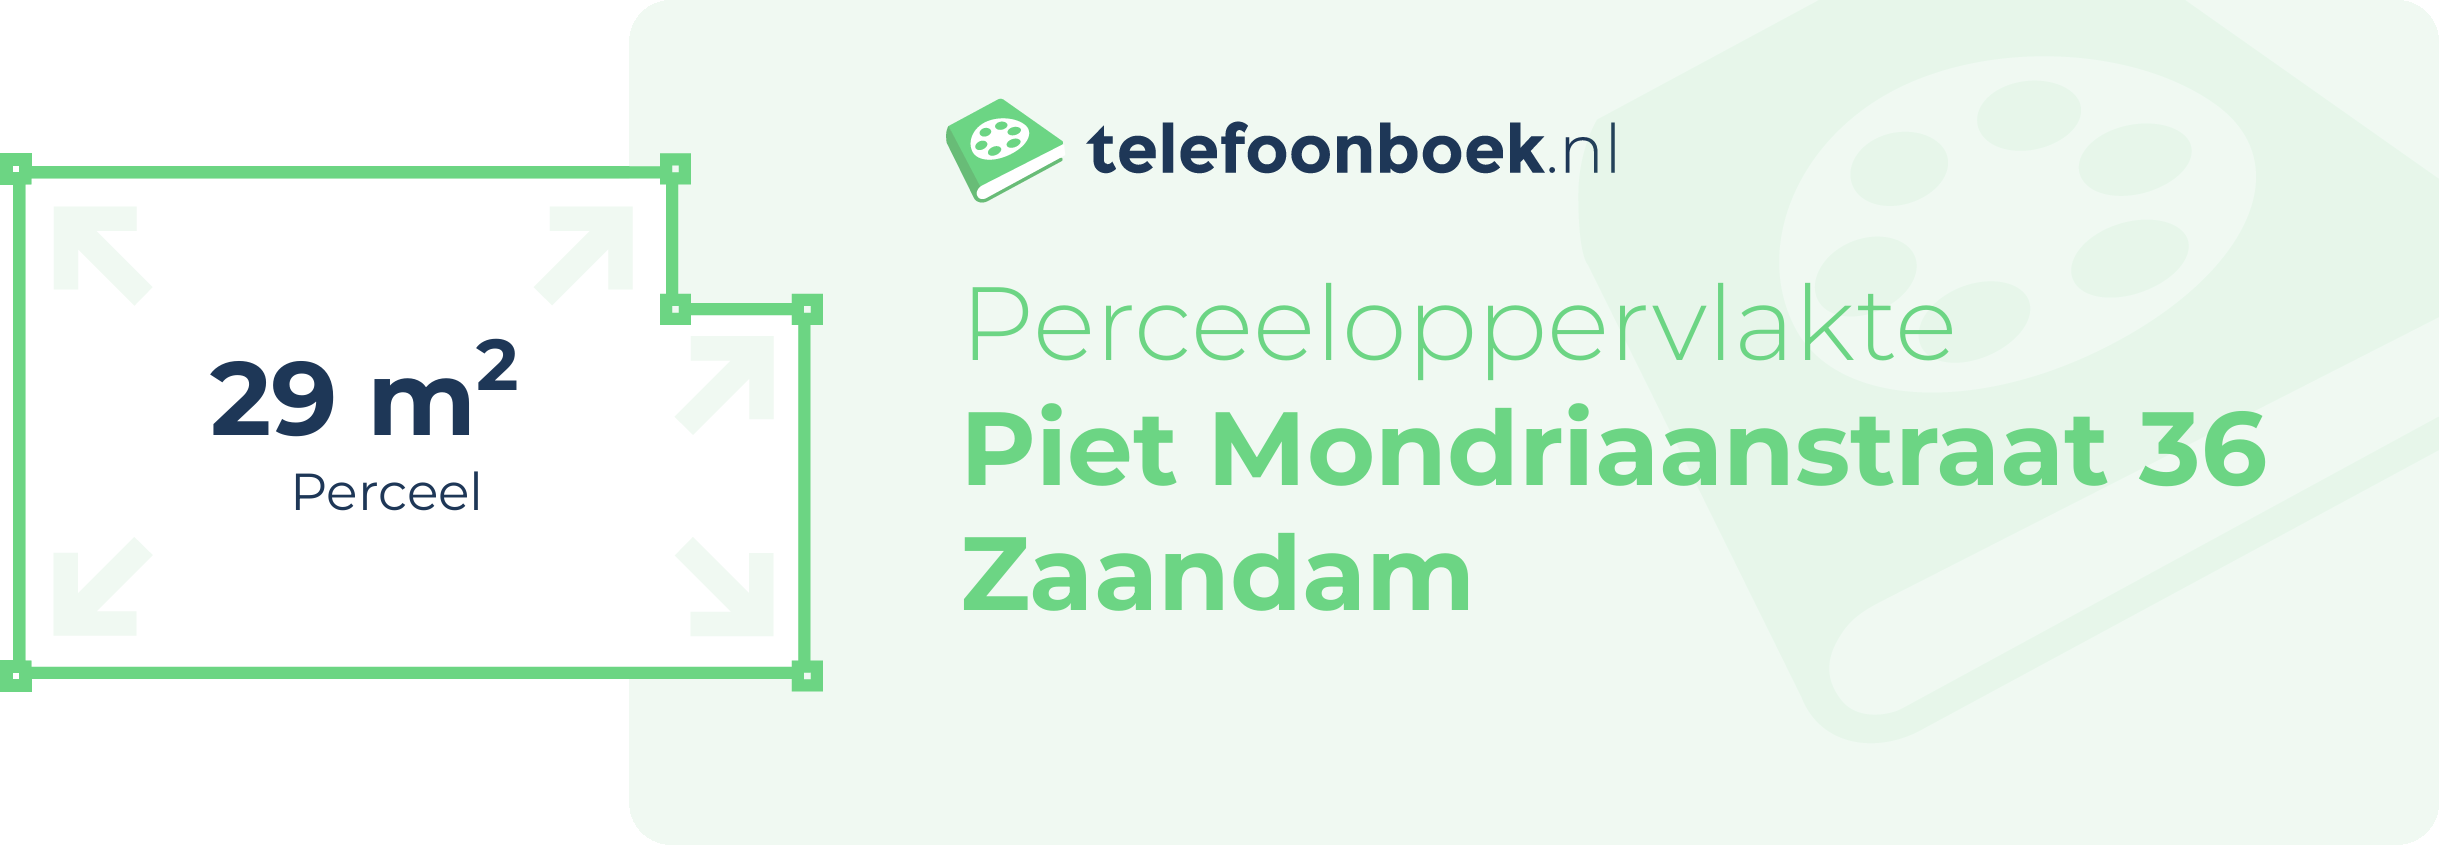 Perceeloppervlakte Piet Mondriaanstraat 36 Zaandam